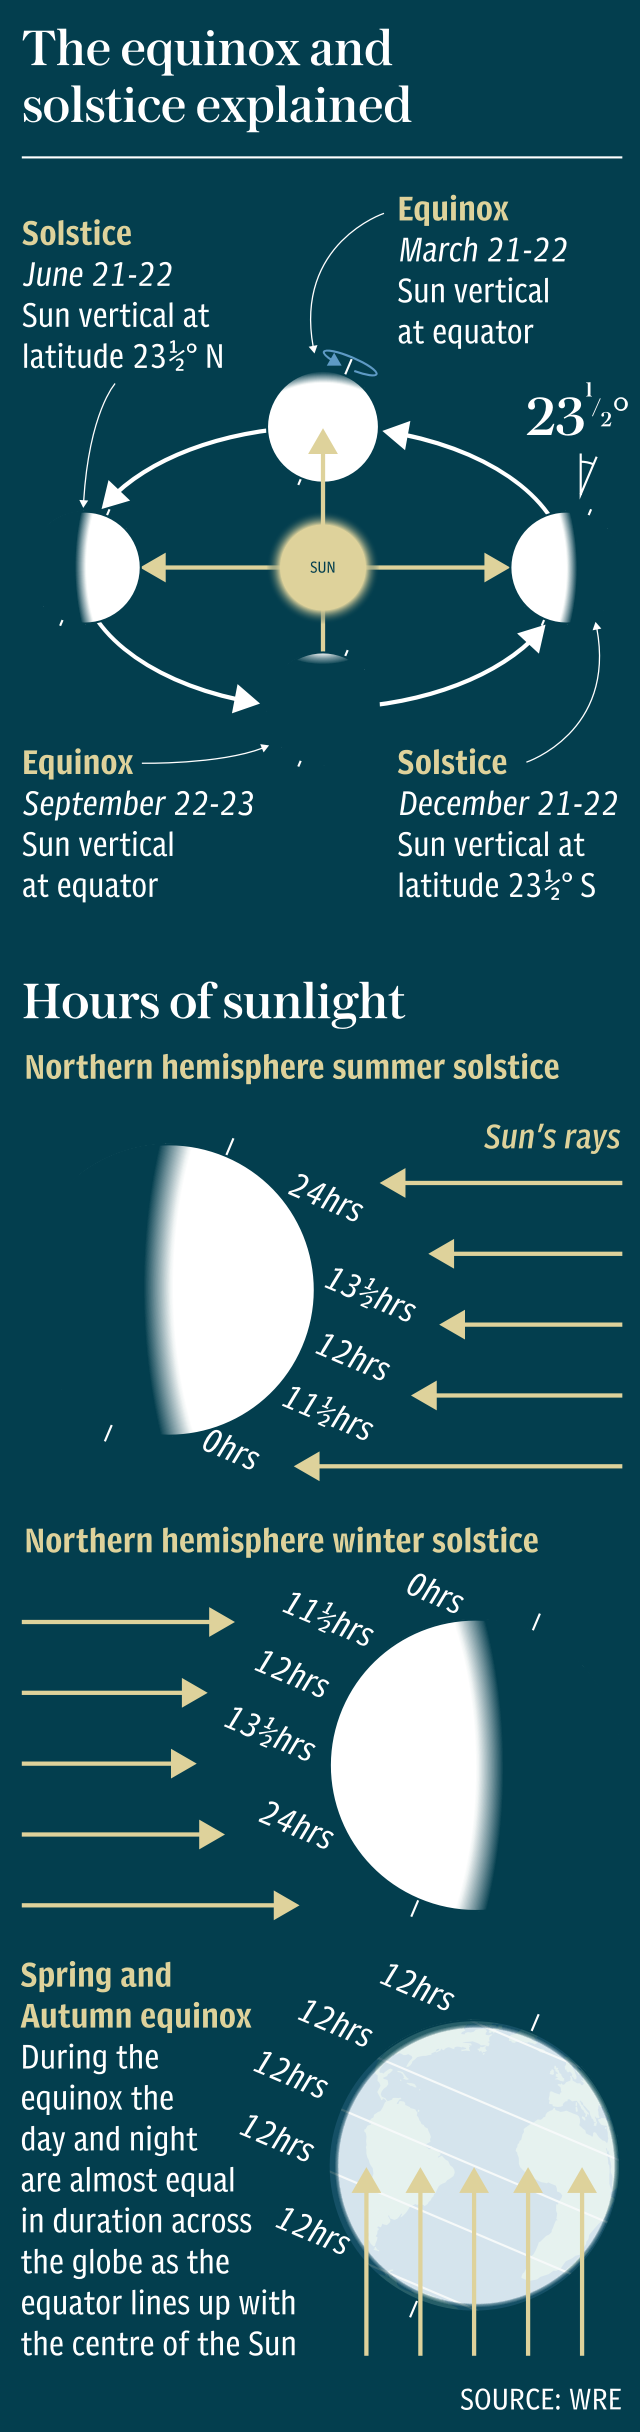 Equinox and solstice explainer graphic